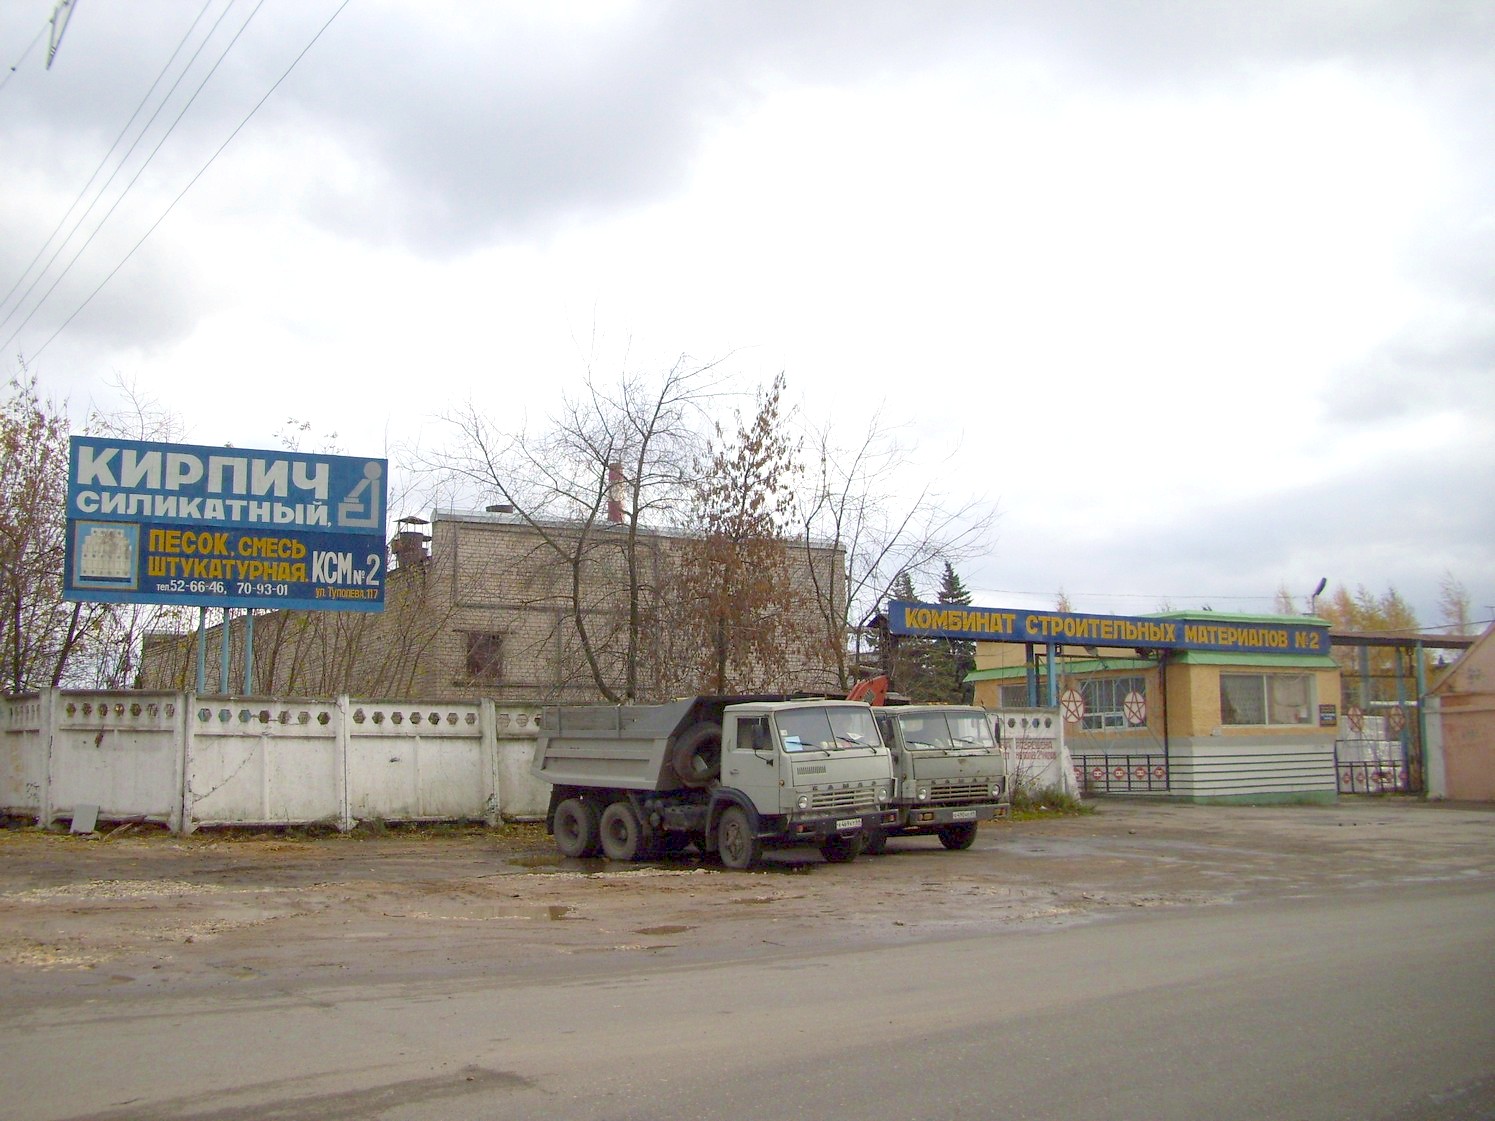 Узкоколейная железная дорога  Тверского комбината строительных материалов №2 — фотографии, сделанные в 2009 году (часть 4)